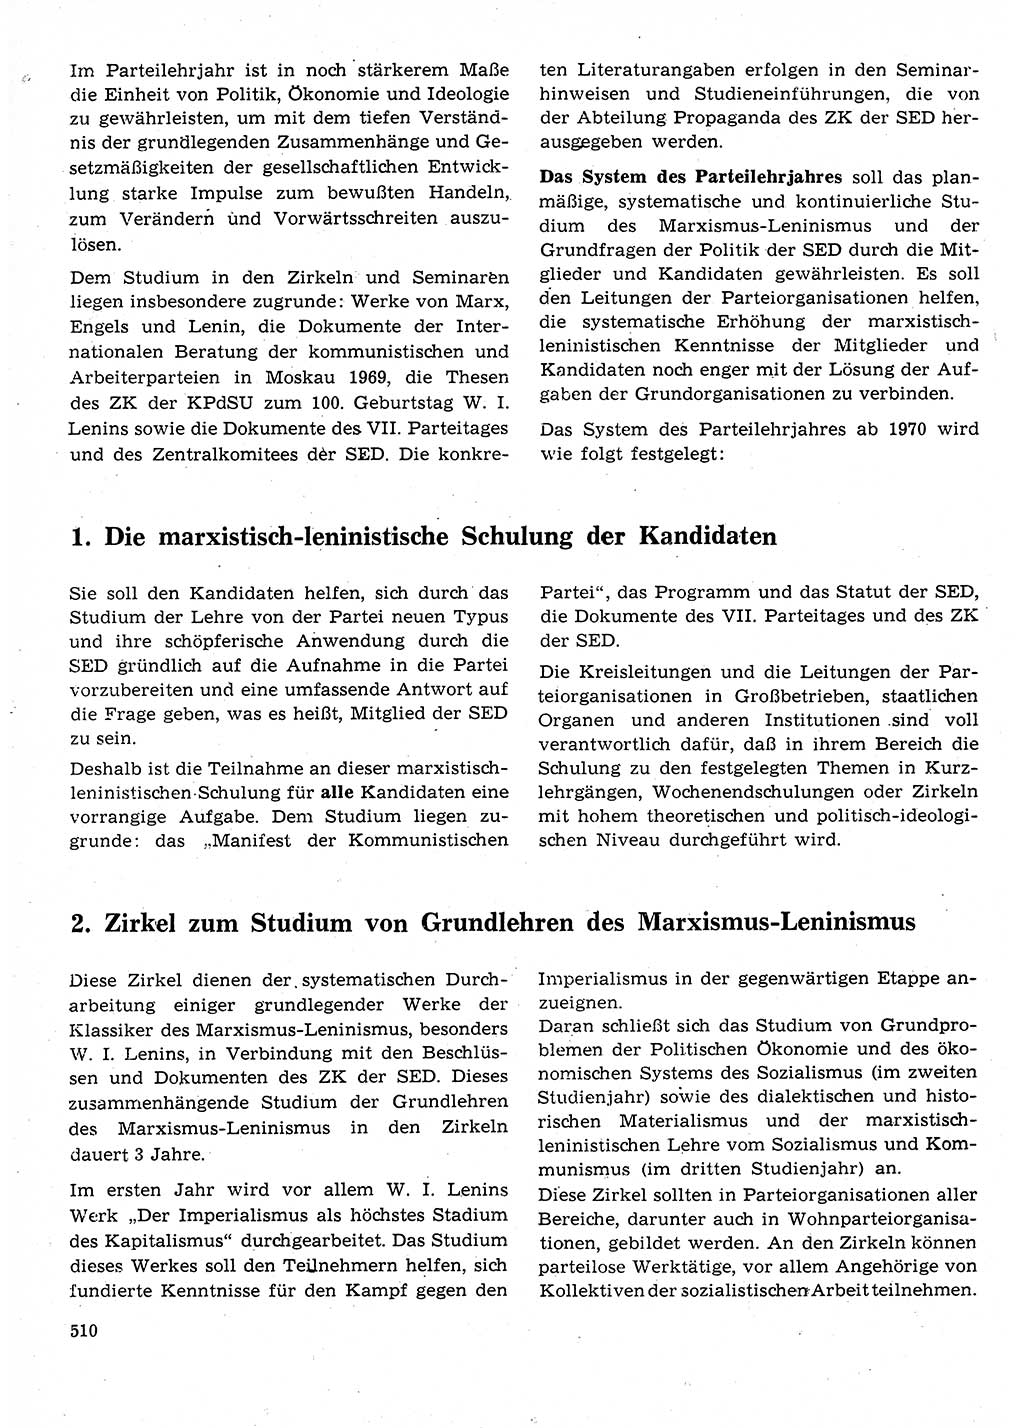 Neuer Weg (NW), Organ des Zentralkomitees (ZK) der SED (Sozialistische Einheitspartei Deutschlands) für Fragen des Parteilebens, 25. Jahrgang [Deutsche Demokratische Republik (DDR)] 1970, Seite 510 (NW ZK SED DDR 1970, S. 510)